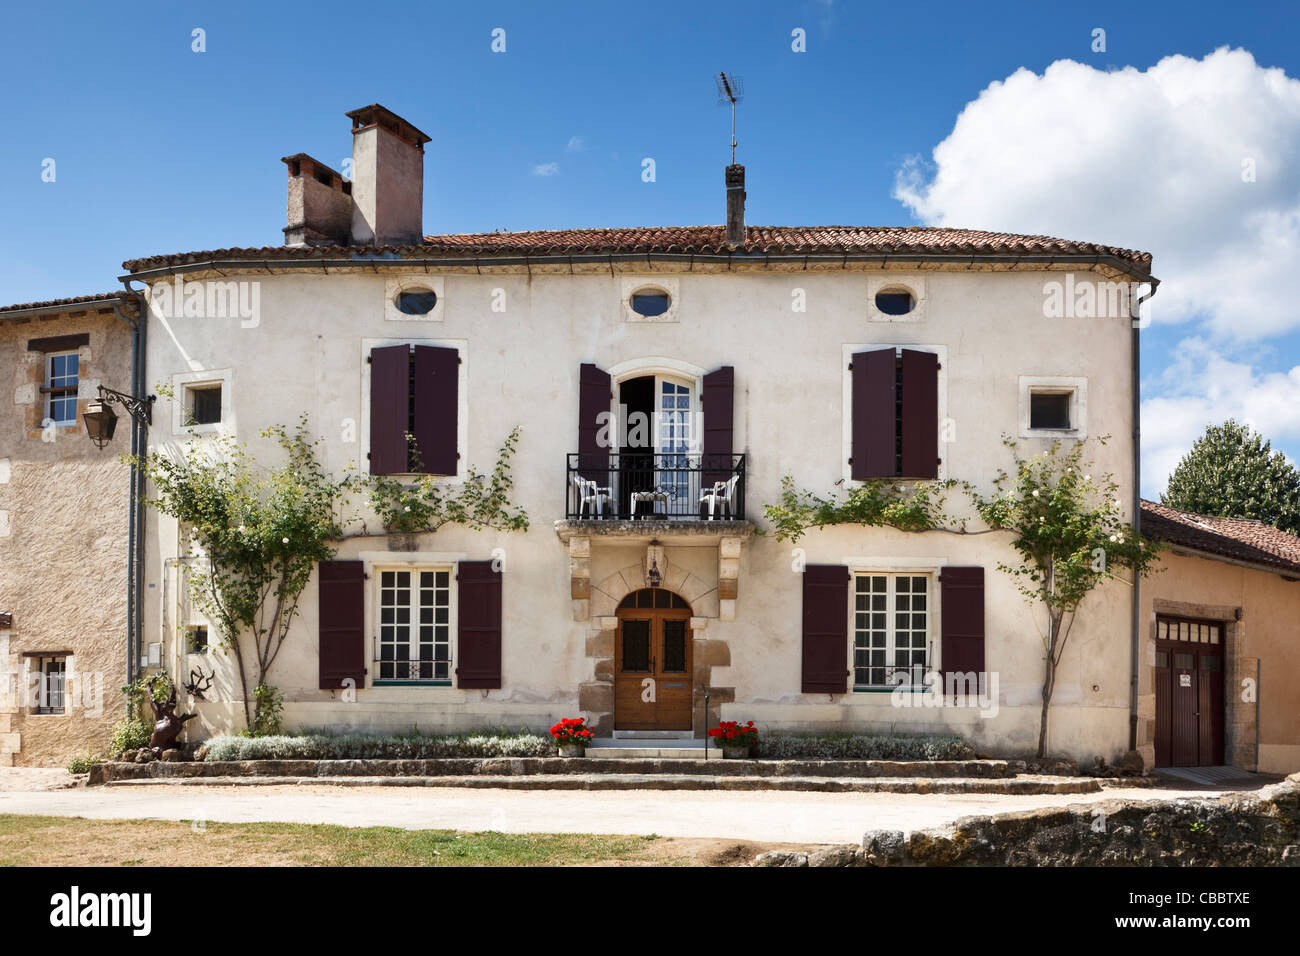 Sud de la France - vieille maison traditionnelle Banque D'Images